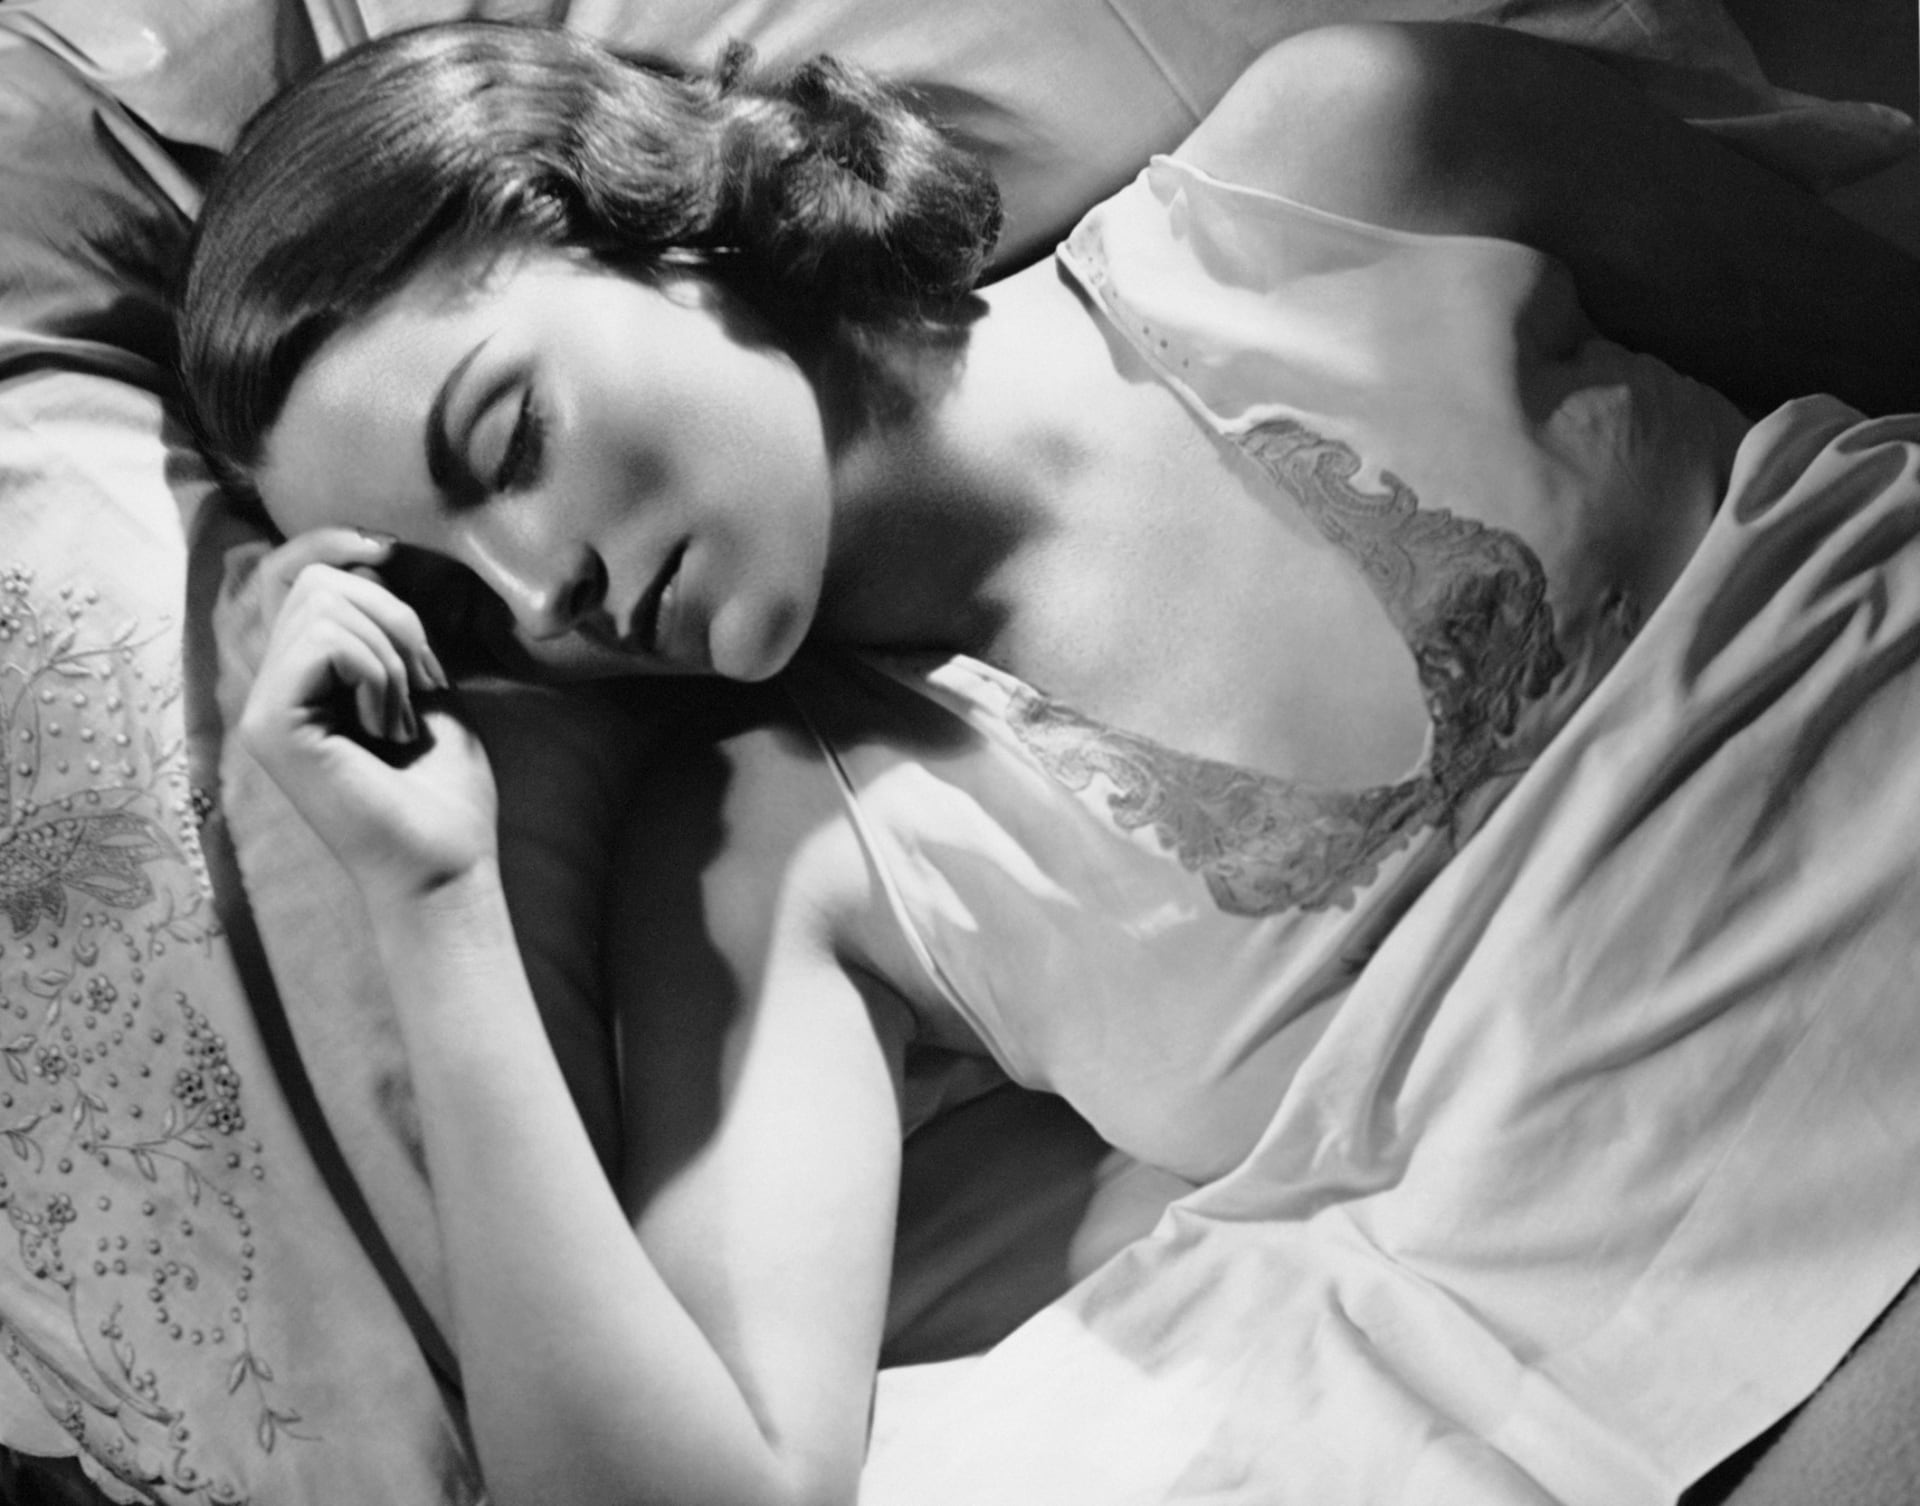 النوم أقل من 6 ساعات بوجود مرض مزمن يؤدي إلى مزيج قاتل